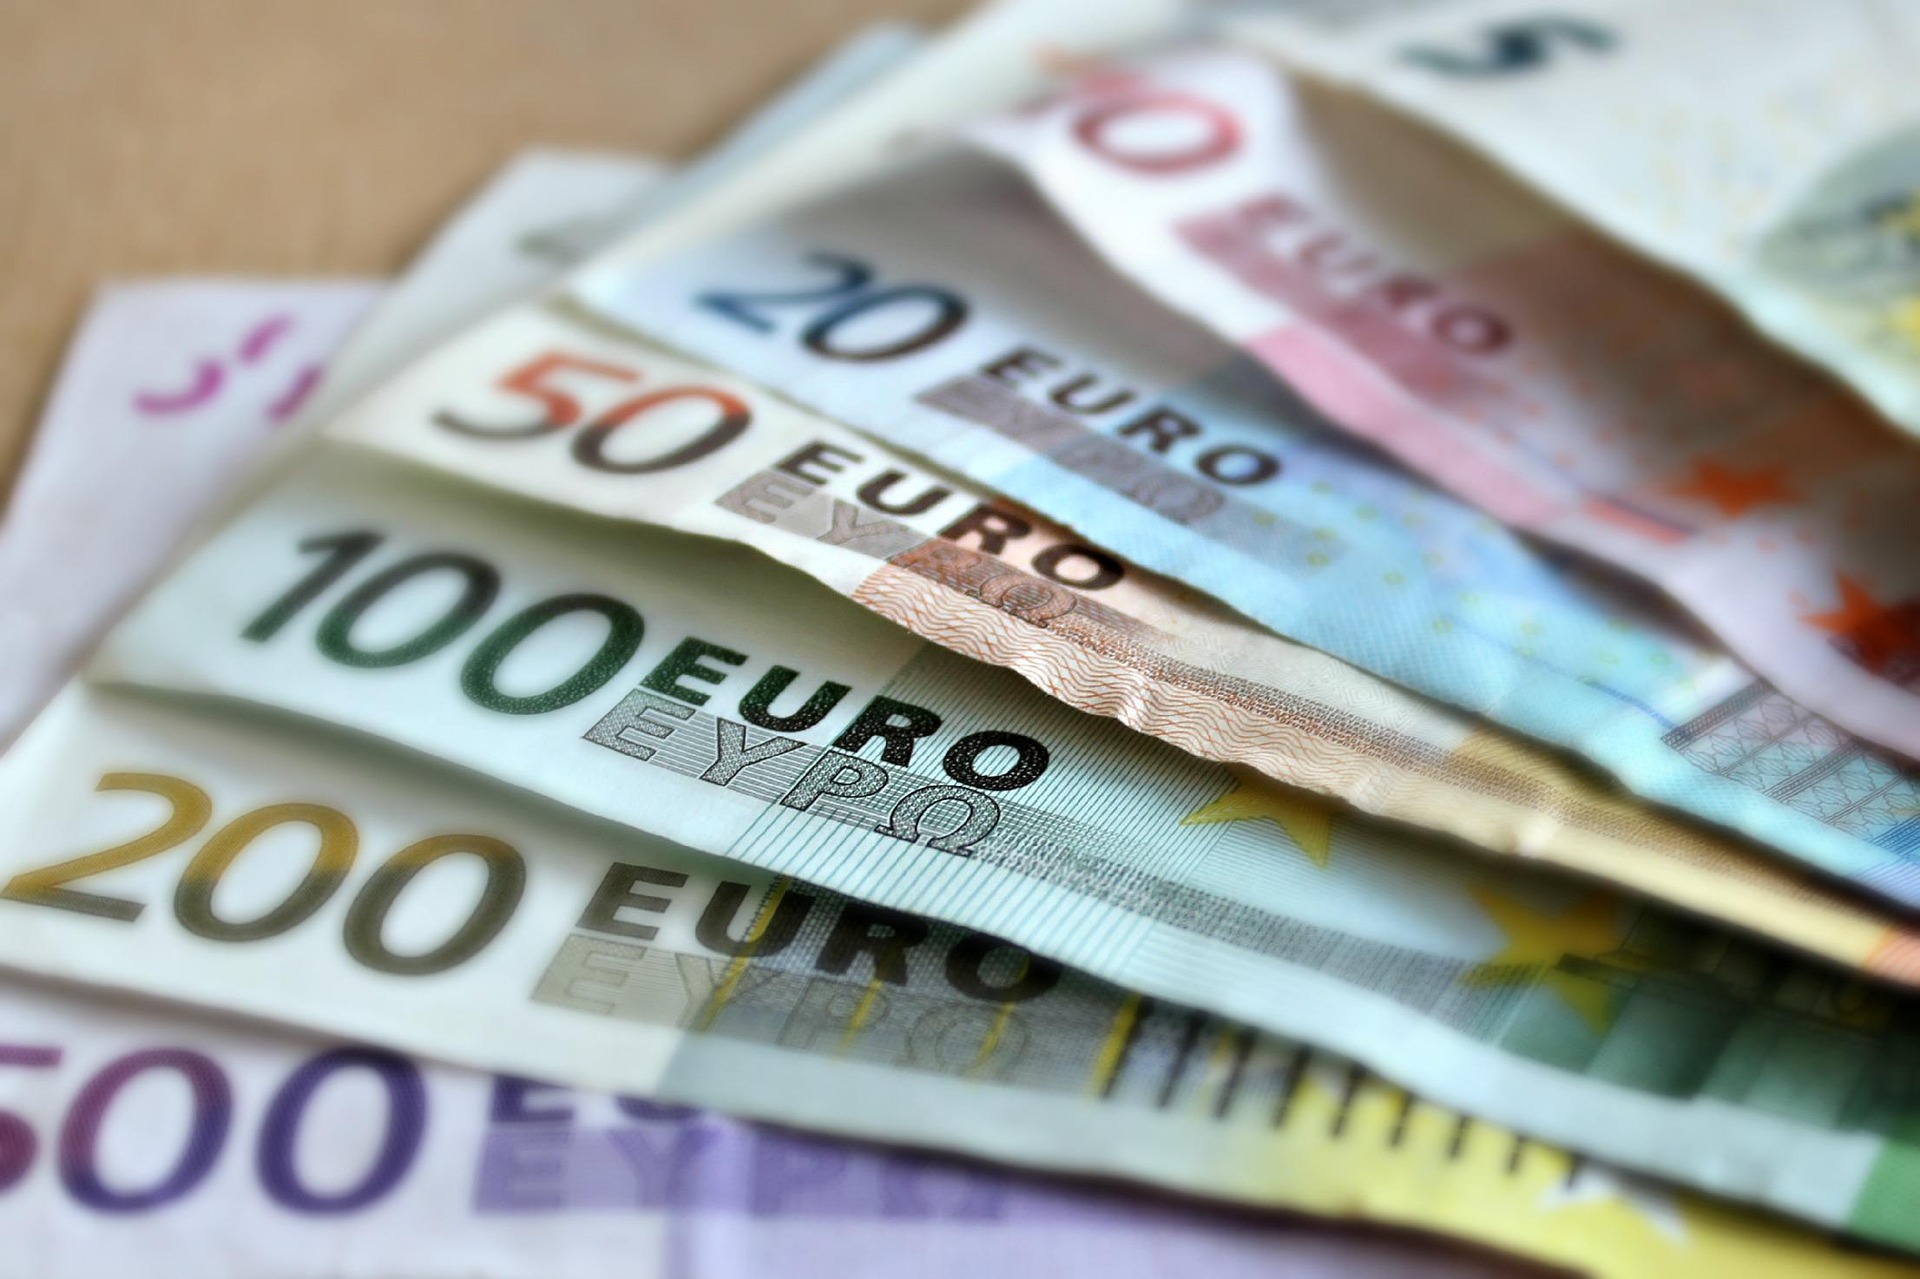 Kiedy wprowadzono euro w Europie?